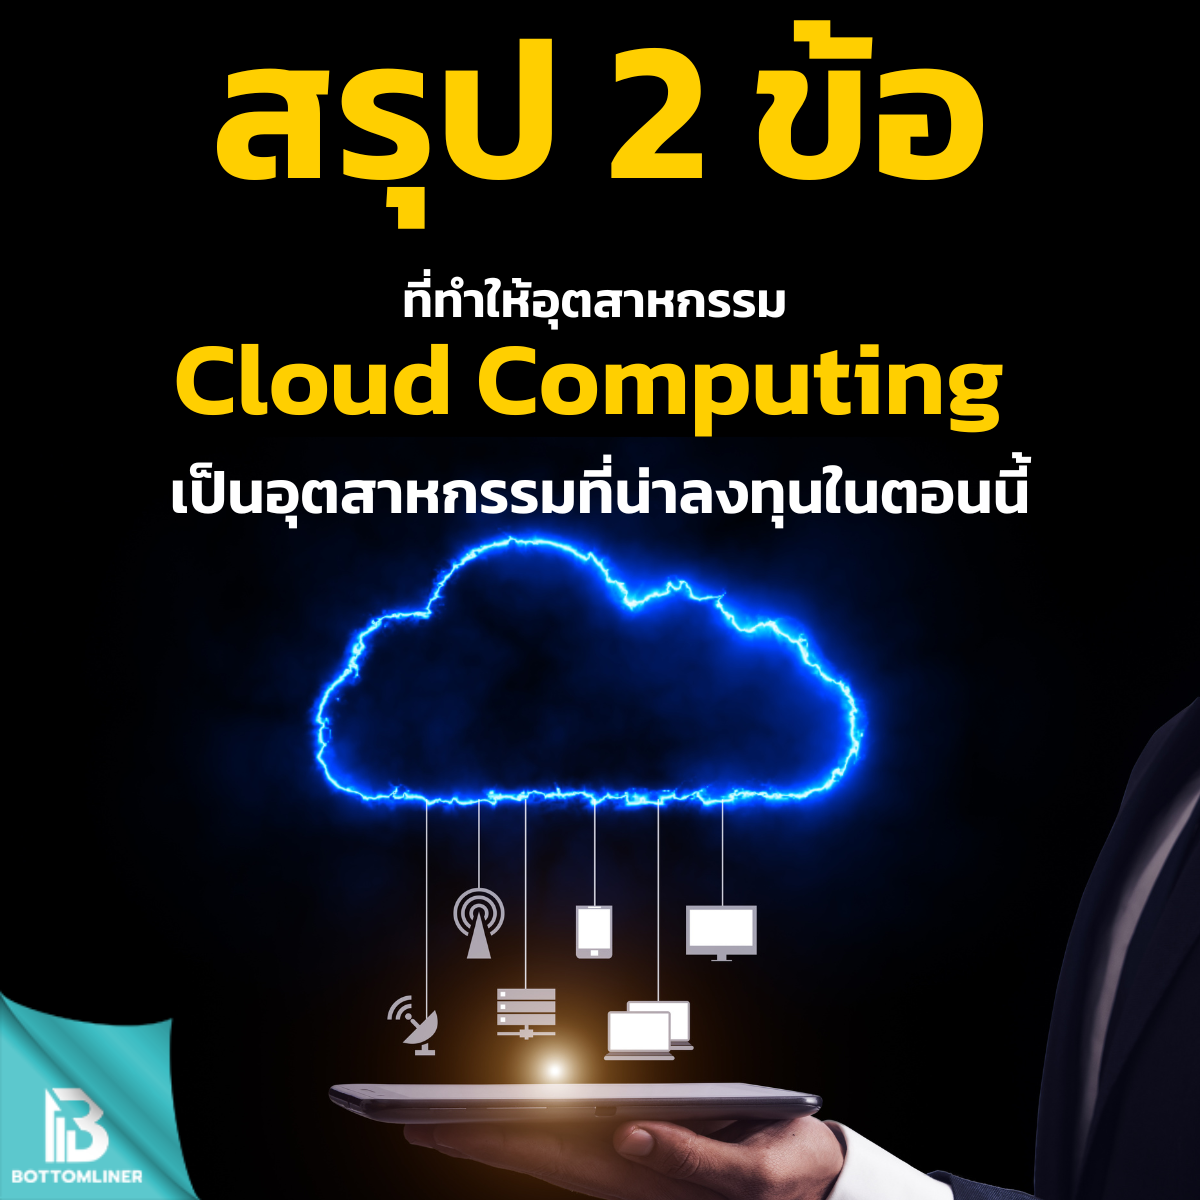 สรุป 2 ข้อที่ทำให้อุตสาหกรรม Cloud Computing เป็นอุตสาหกรรมที่น่าลงทุนในตอนนี้